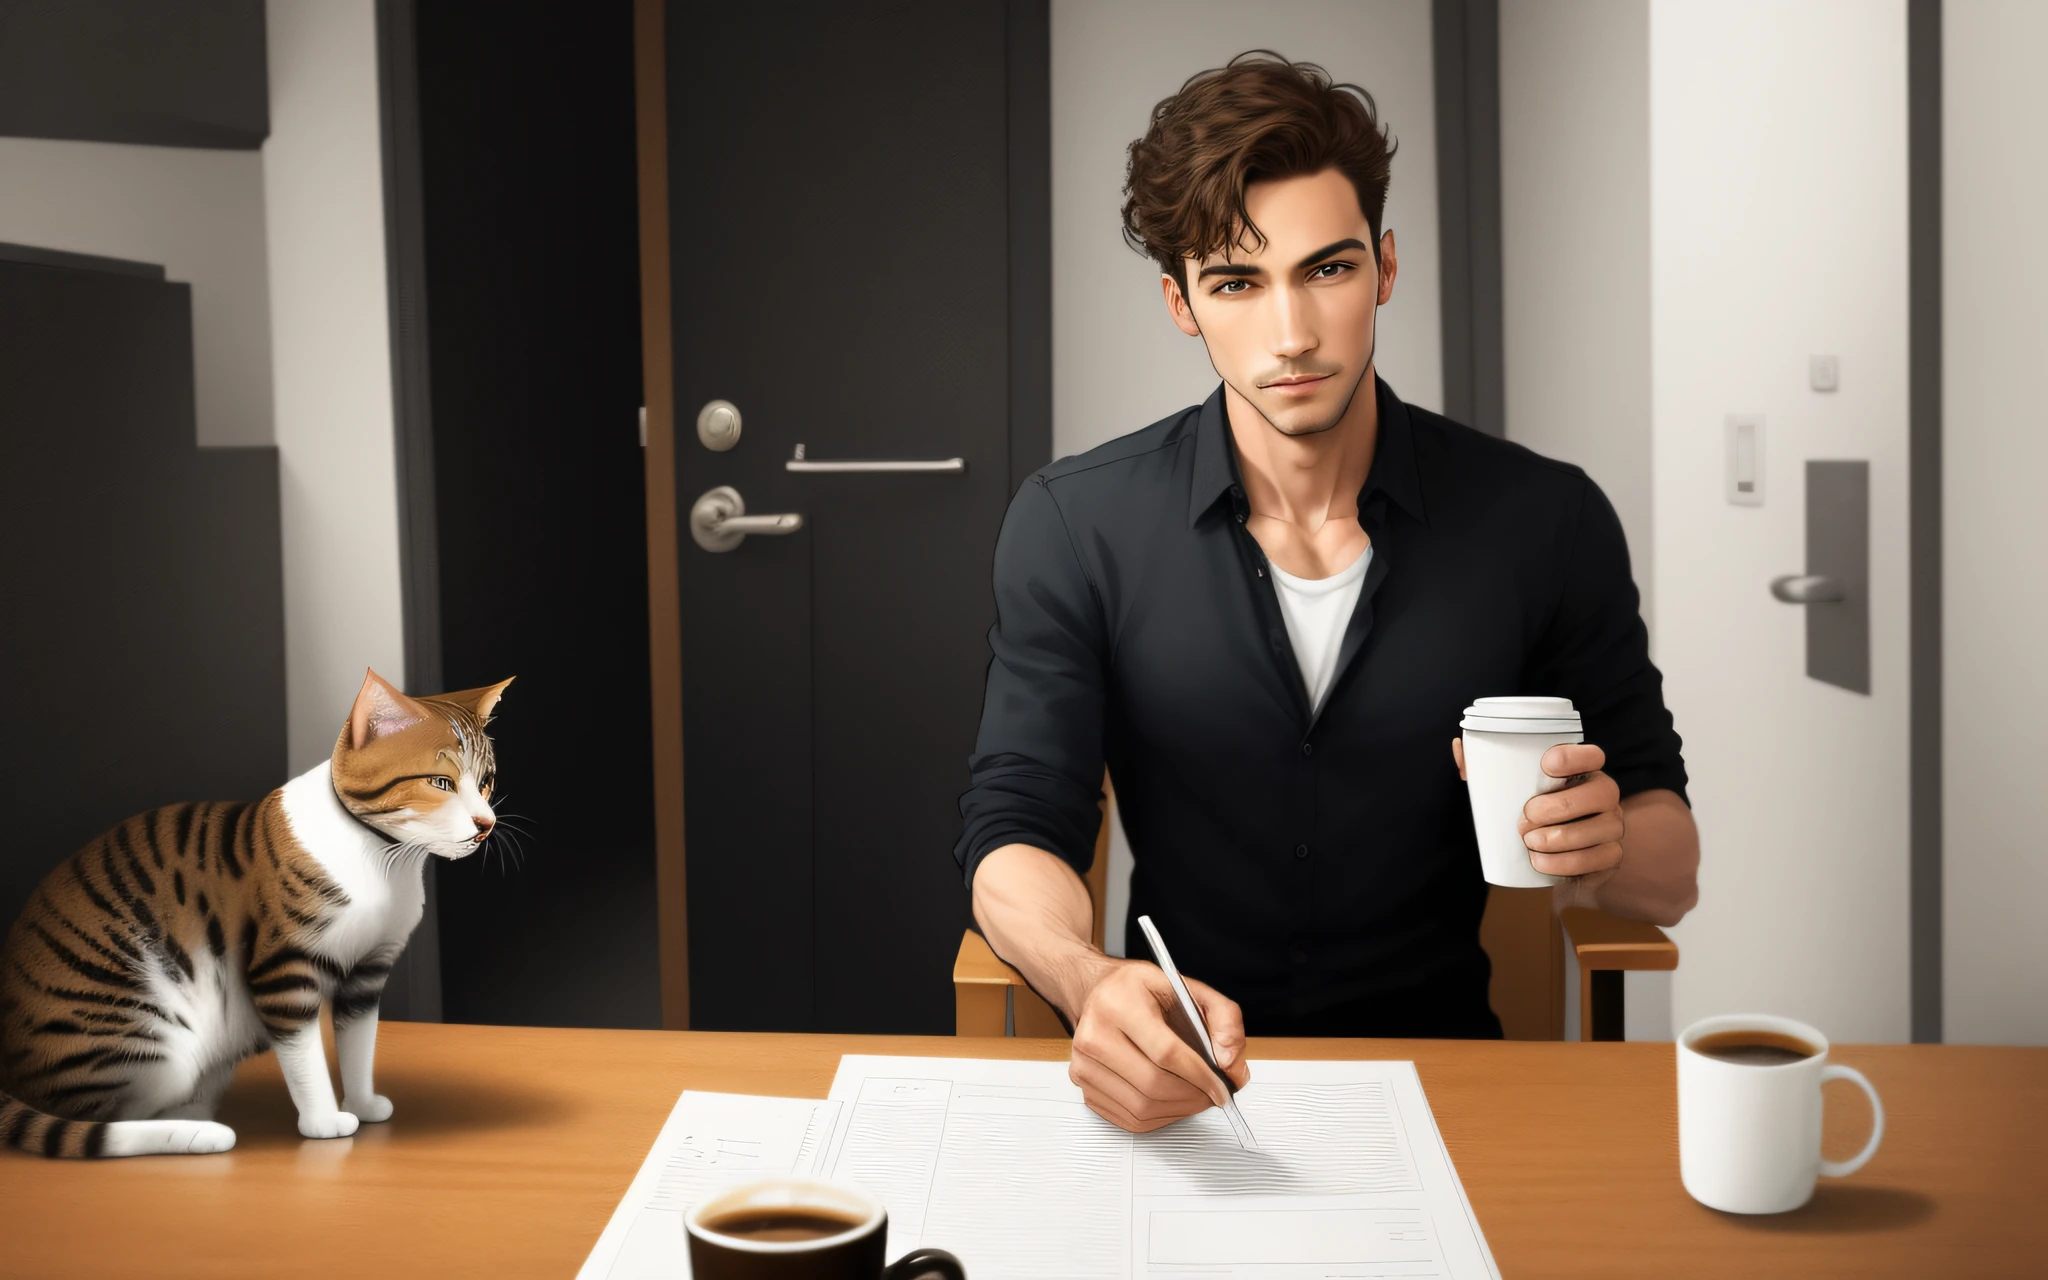 um completo-homem encorpado andando ereto,  segurando uma xícara de café, um gato seguindo a mesma direção que o homem, estilo dos desenhos animados,  apenas um homem. Imagem real realista detalhada.